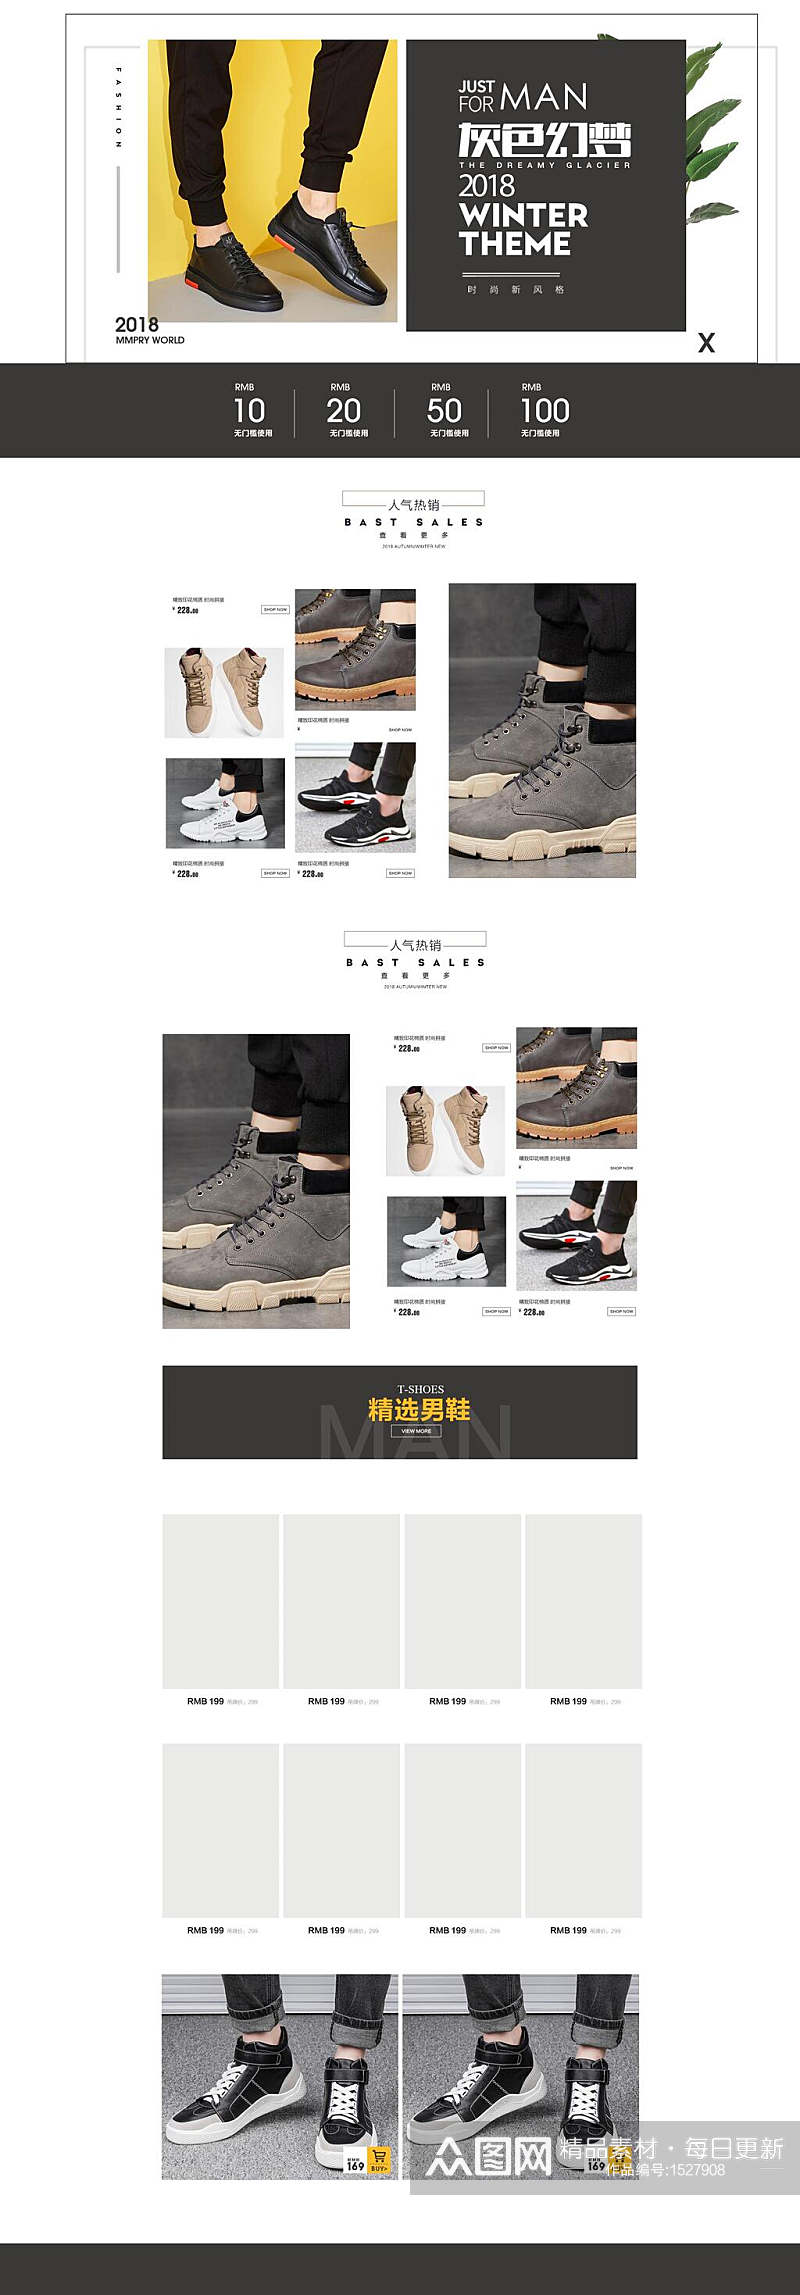 灰色梦幻男鞋电商首页详情页设计素材